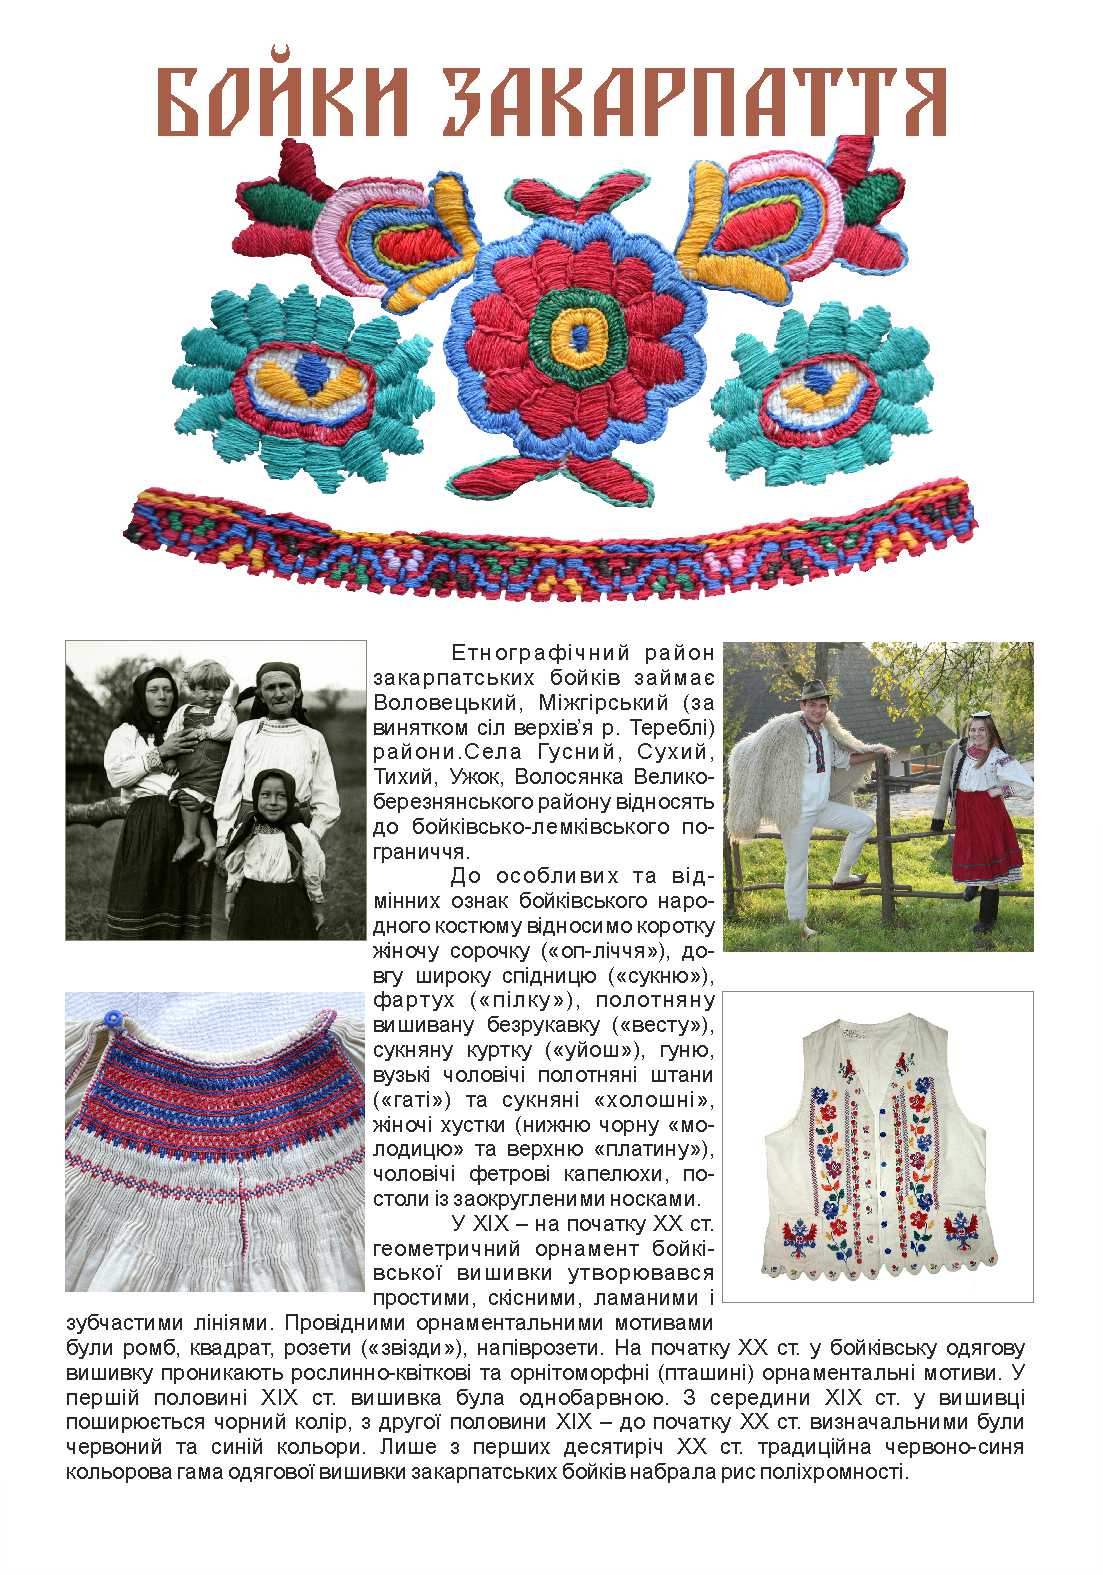 Смелое сочетание традиций и новаторских решений в одежде можно будет увидеть в выставочном зале Закарпатского музея народной архитектуры и быта 3 августа.